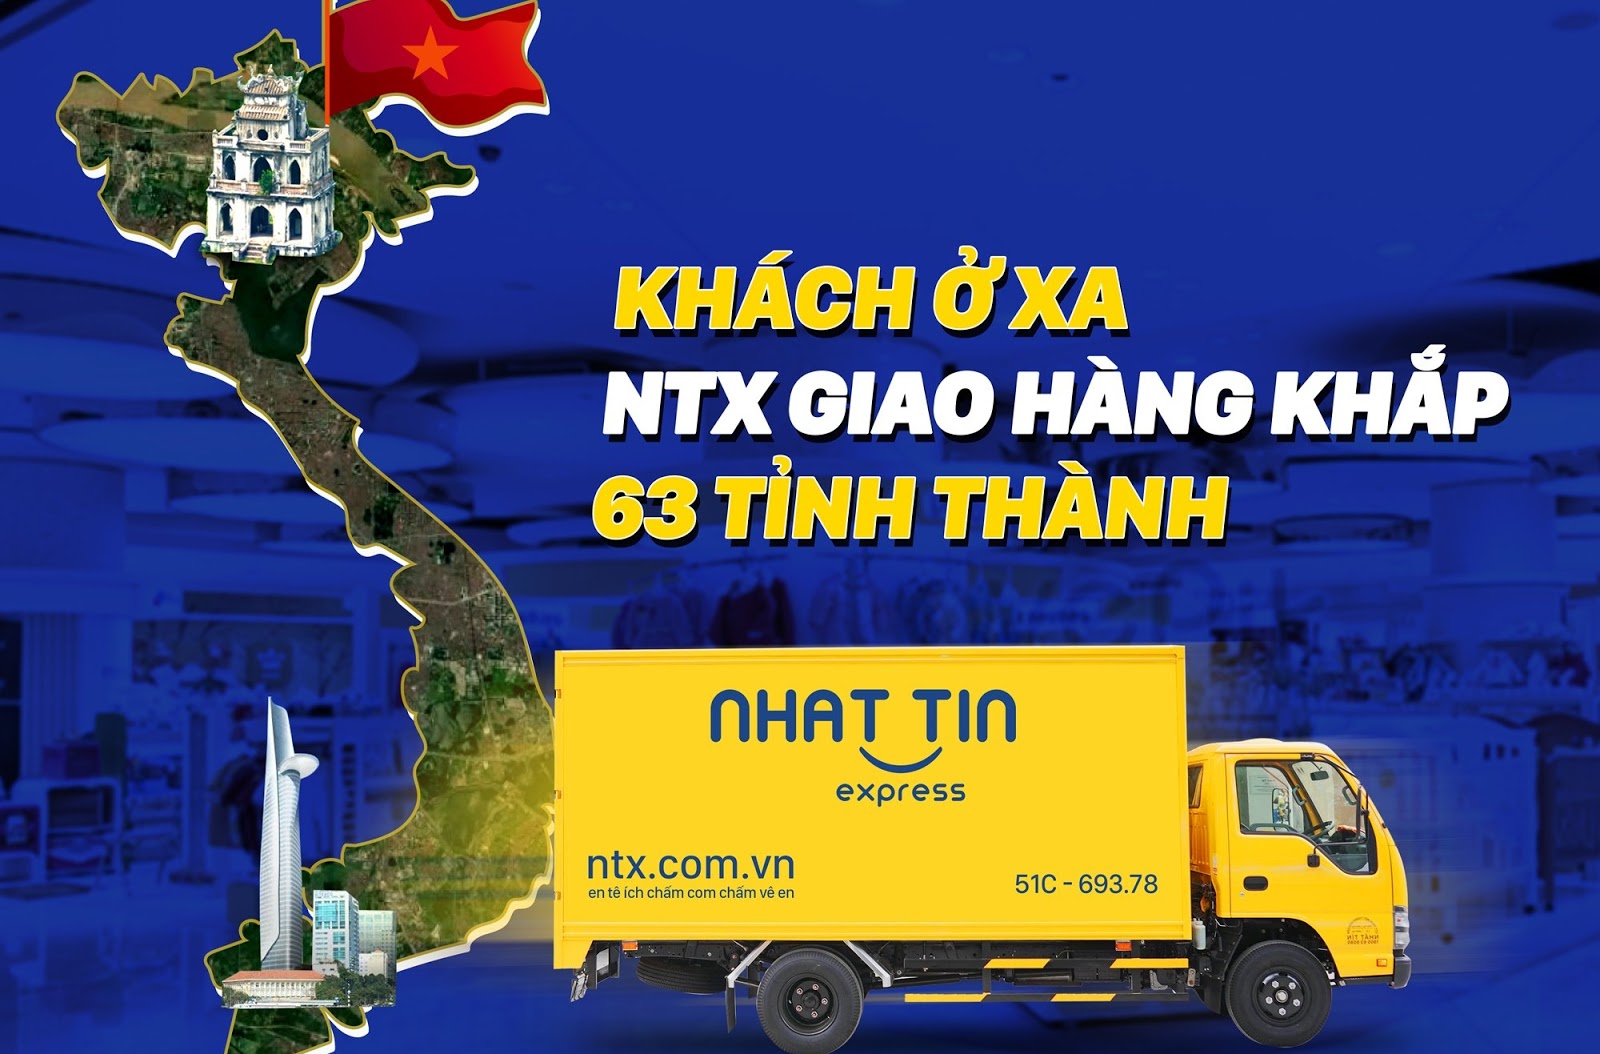 Gửi hàng đi tỉnh an toàn với đơn vị giao hàng nhanh, giá cước tốt NTX - Nhất Tín Express